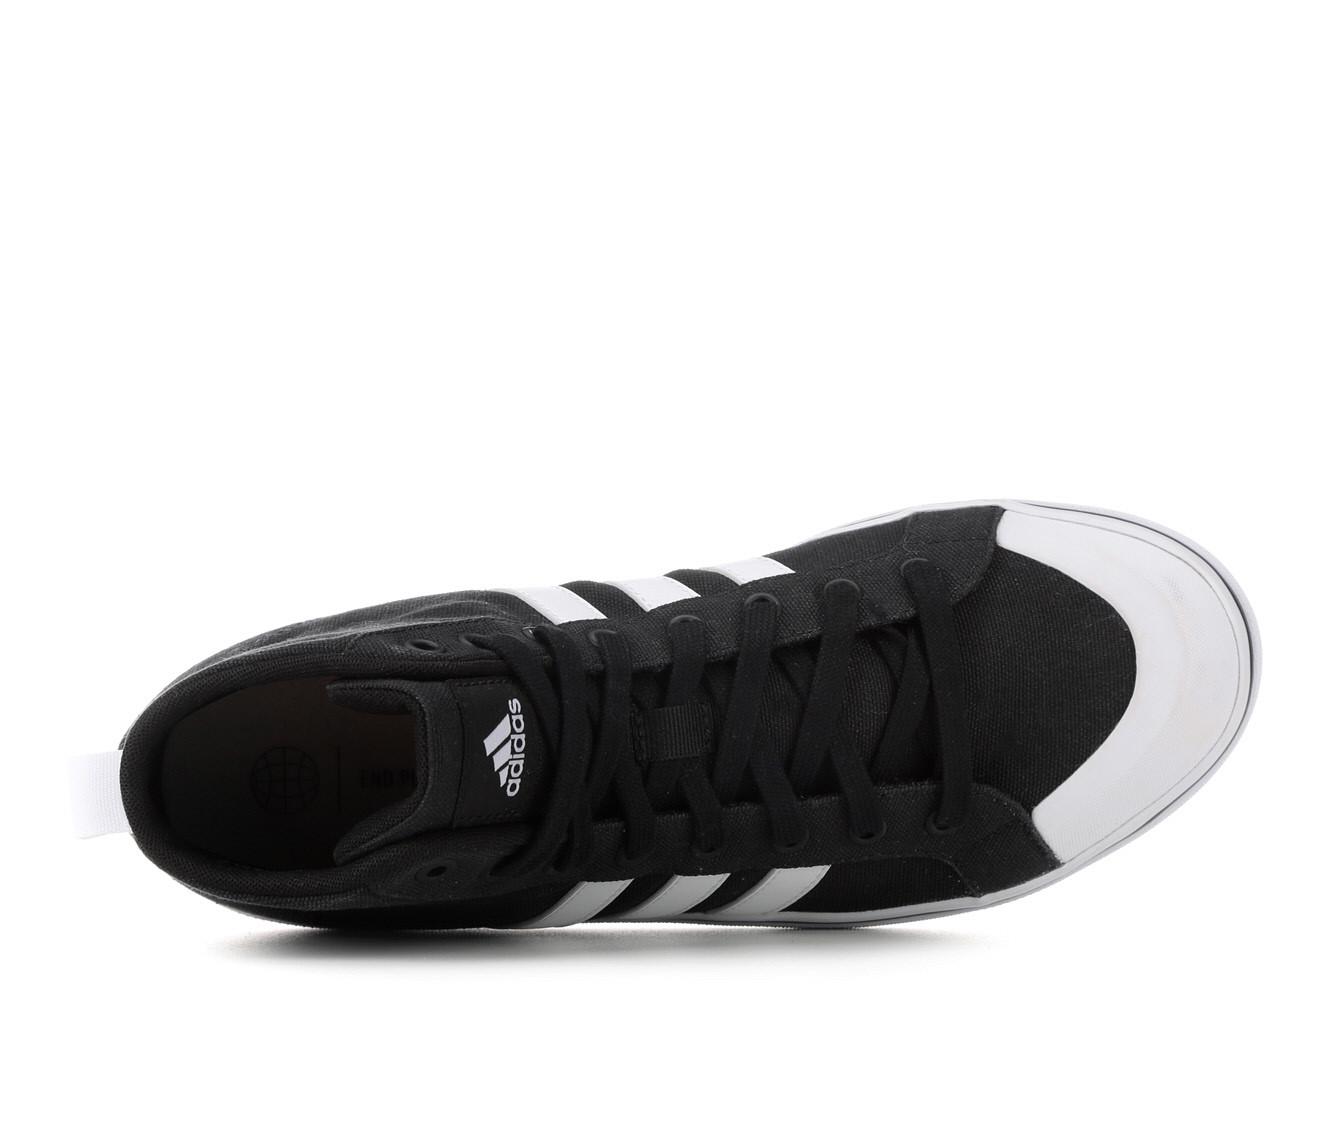 adidas Bravada 2.0 Mid Black Skate Shoes